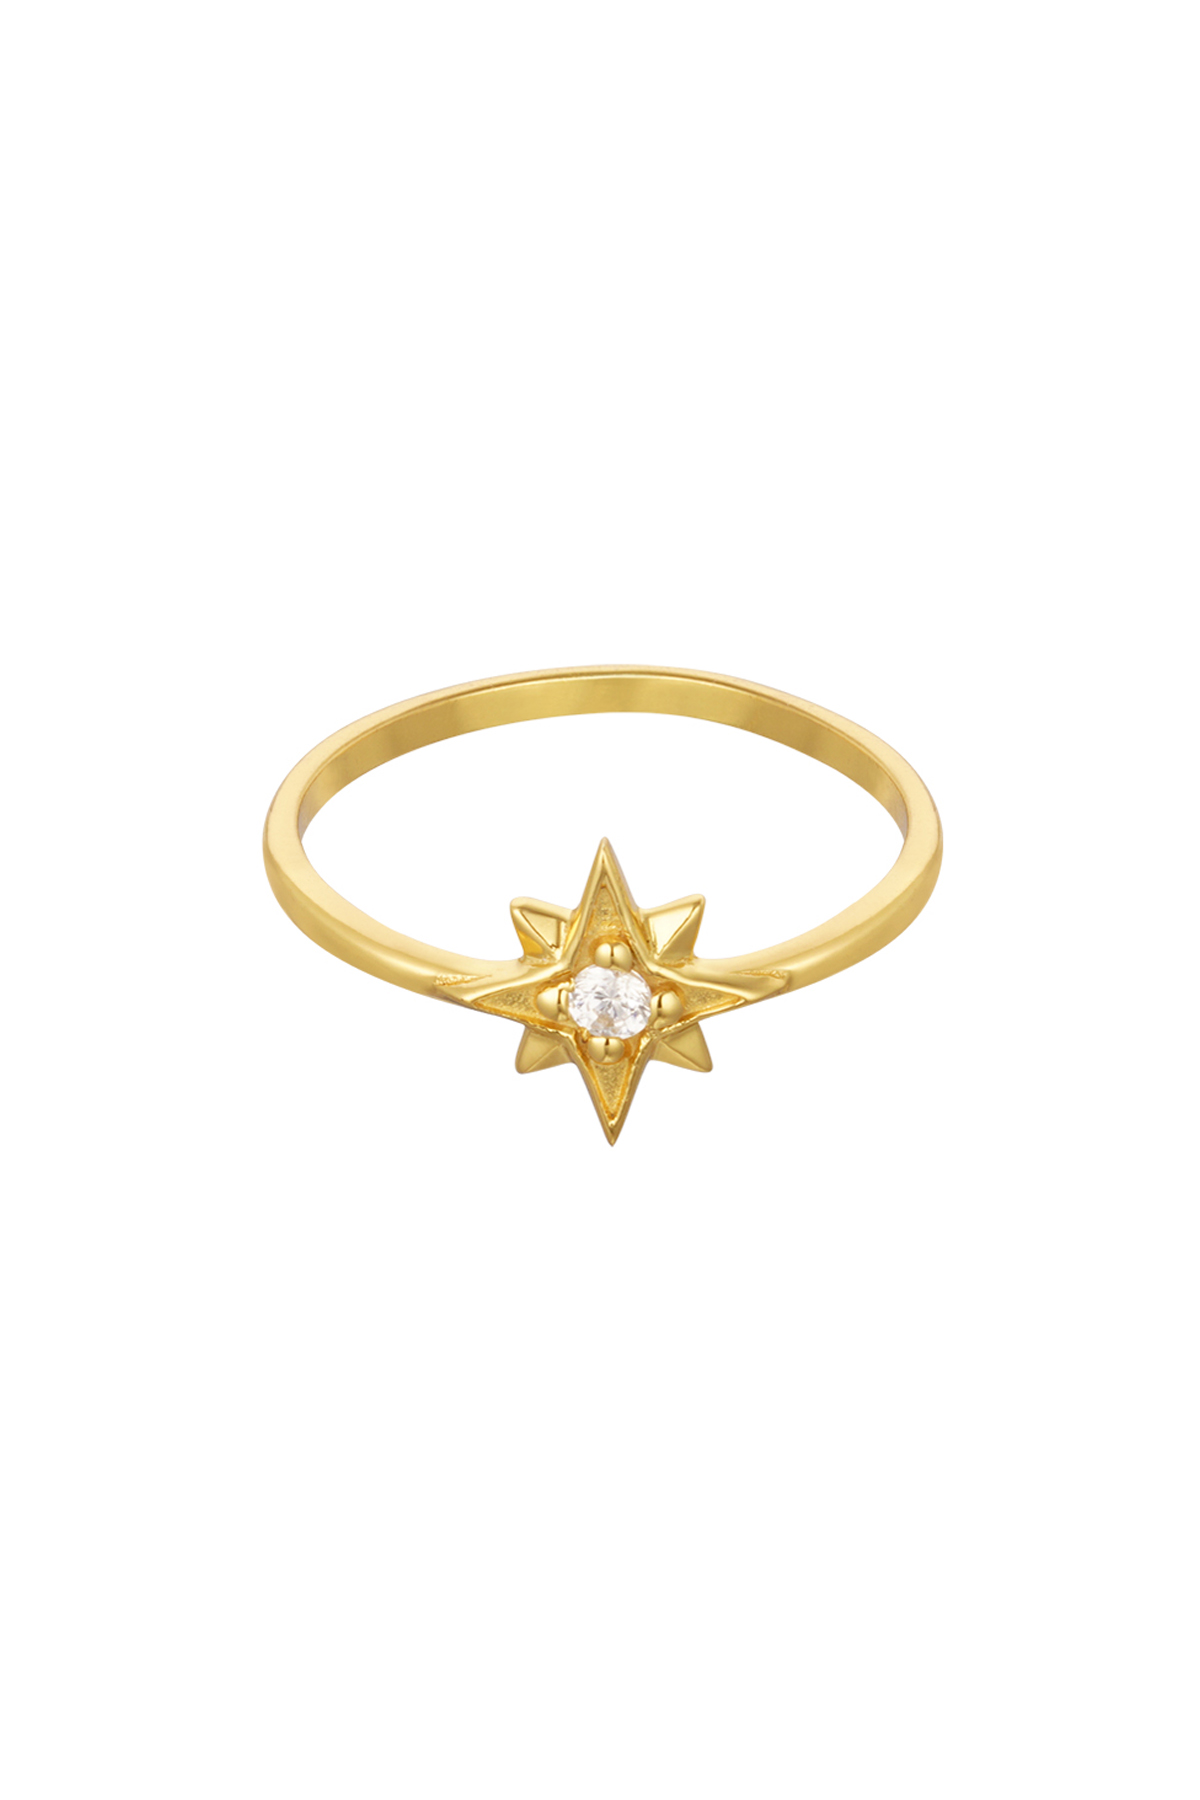 Anello doppia stella - Argento 925 - Oro - 17 